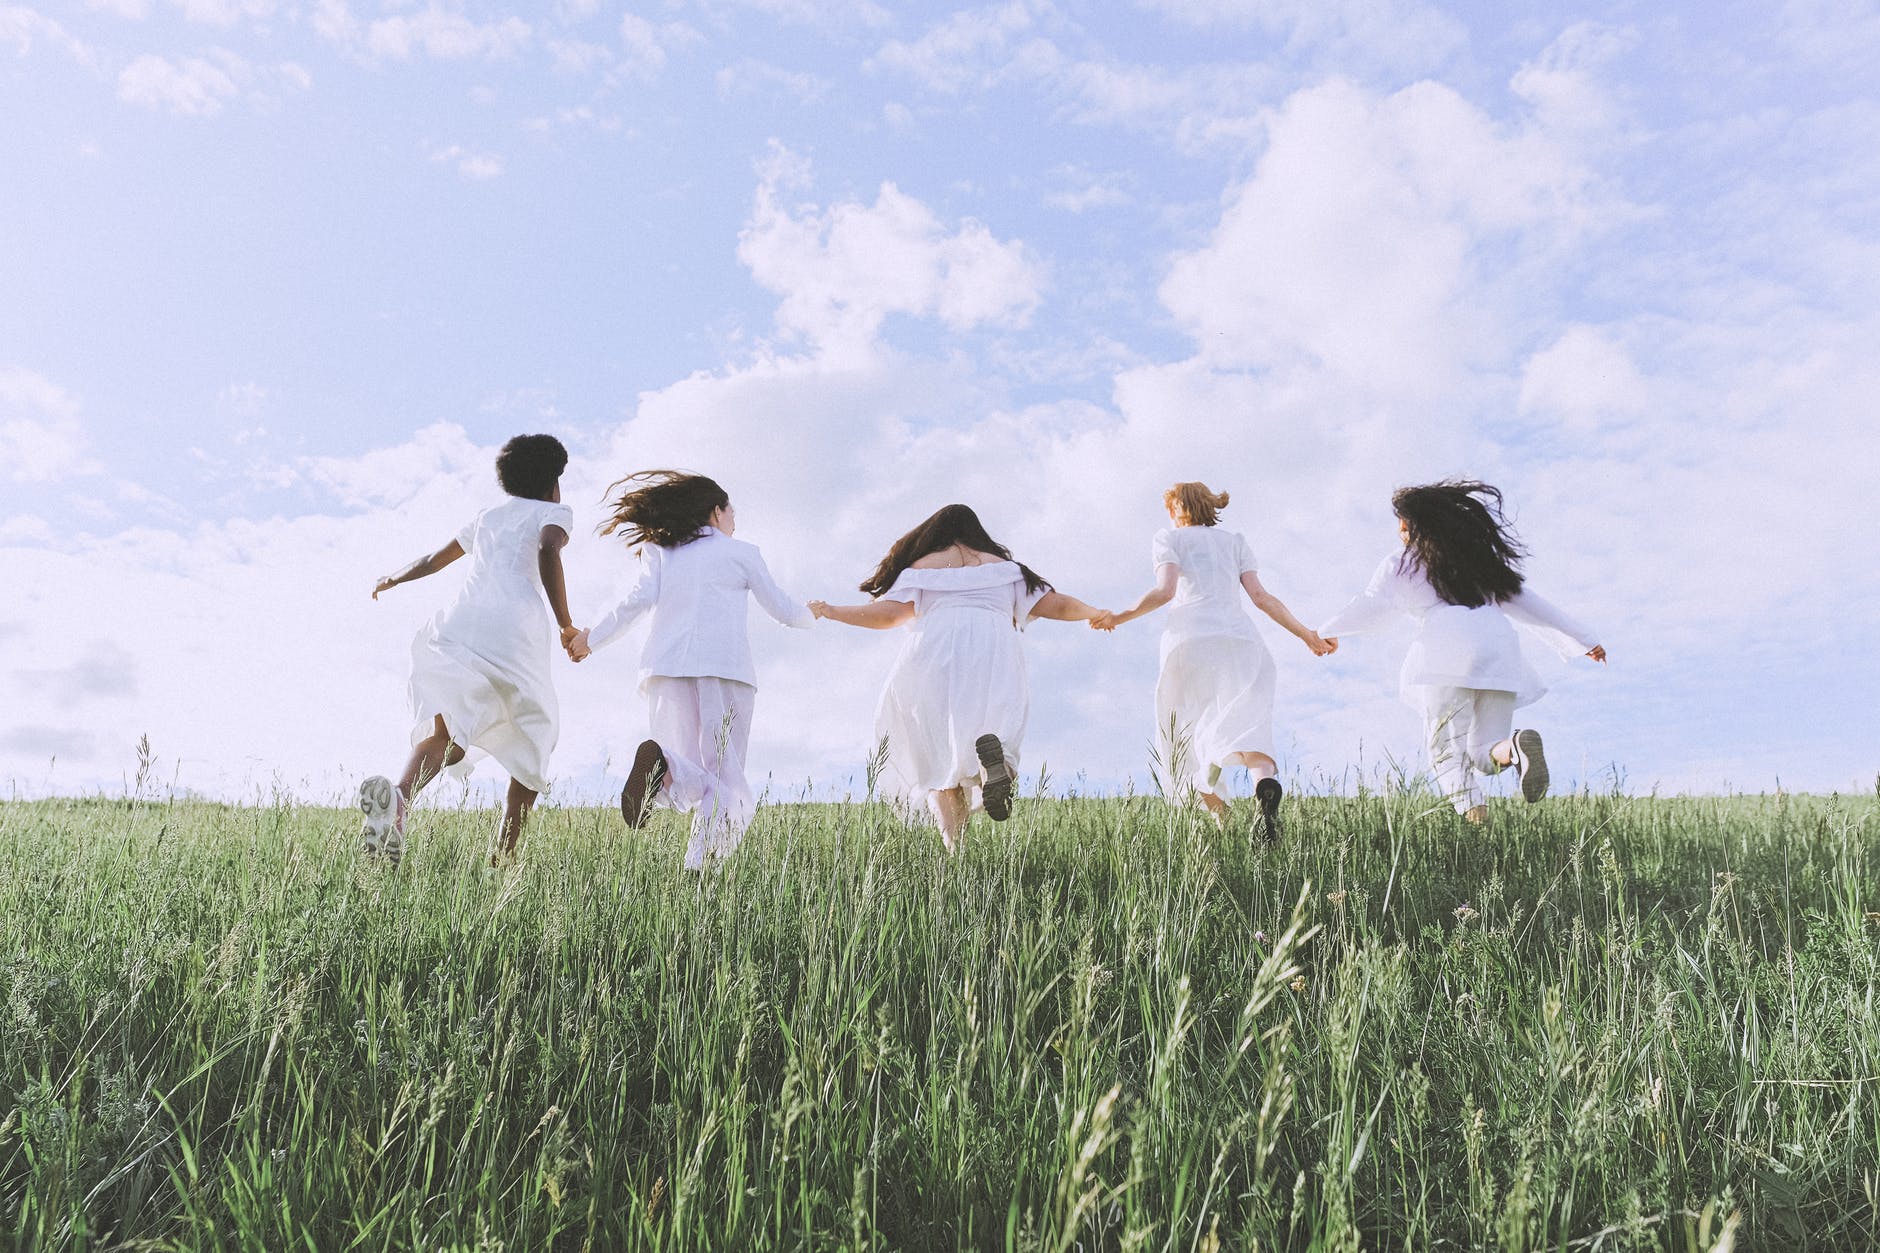 five women wearing white clothes, women running, grass field